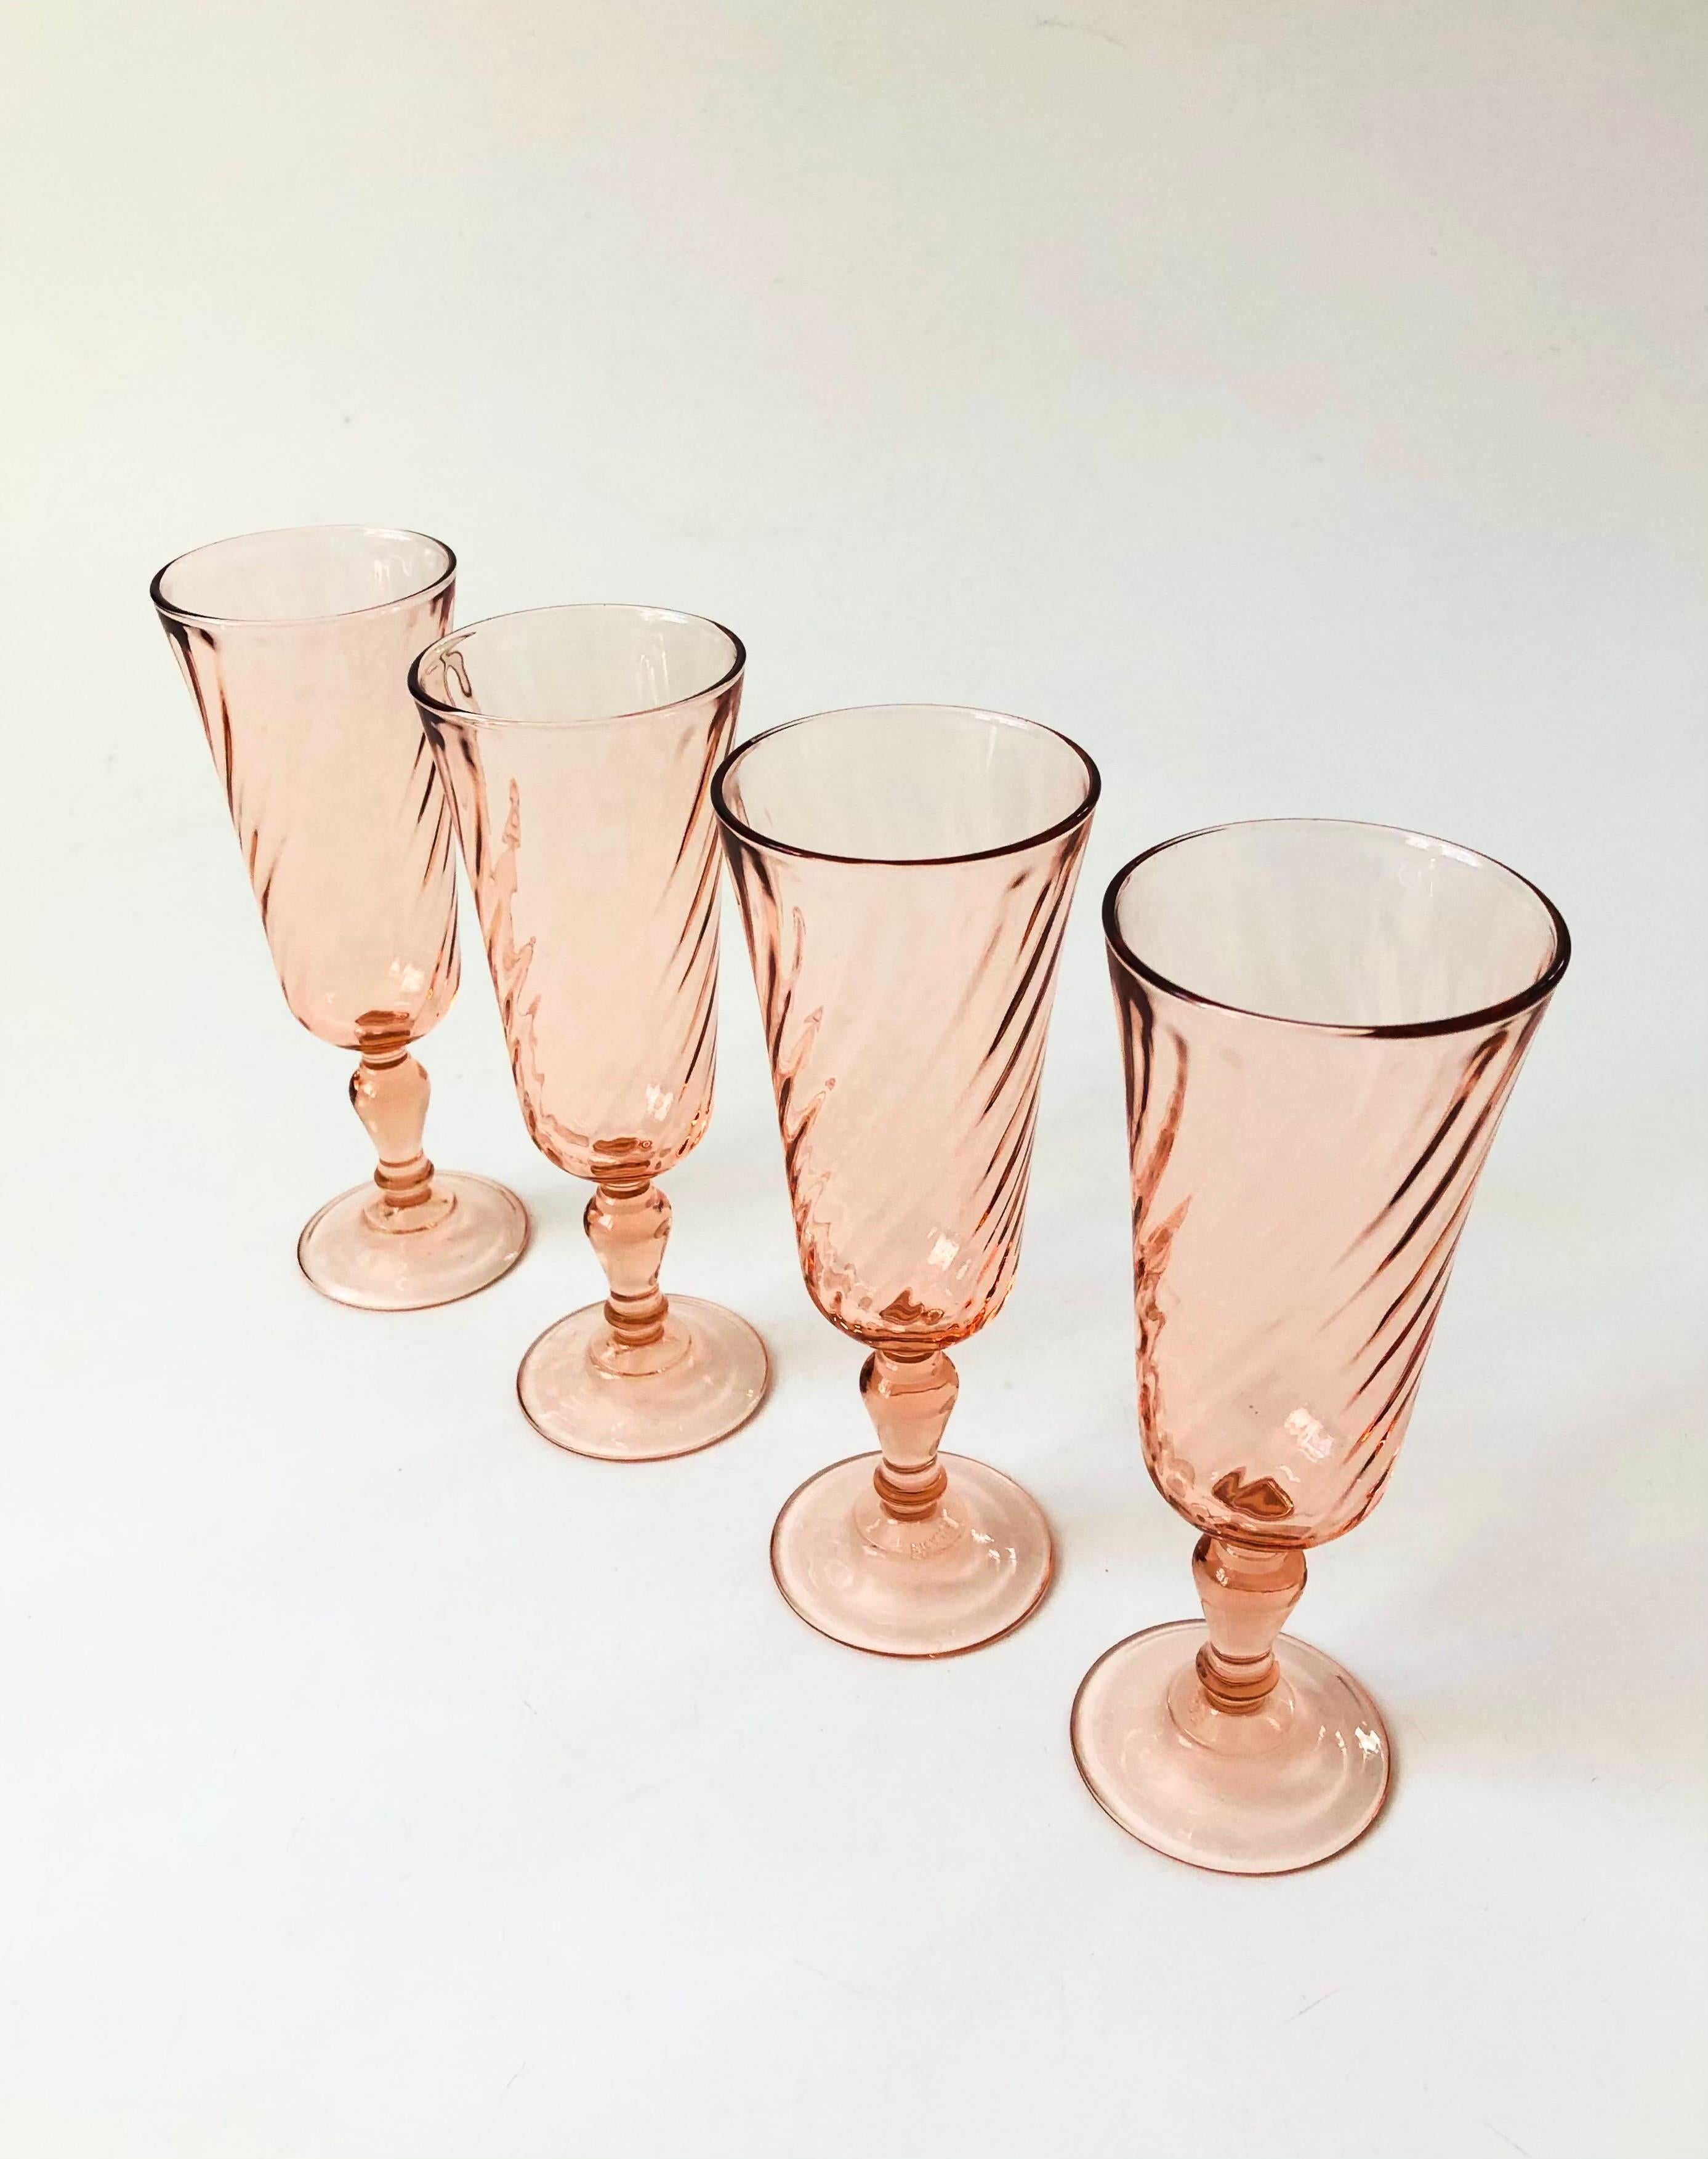 Ein Set aus 4 Vintage-Champagnerflöten in einem blassrosa Farbton. Jedes Glas hat ein hübsches Wirbelmuster. Hergestellt in Frankreich von Arcoroc.

